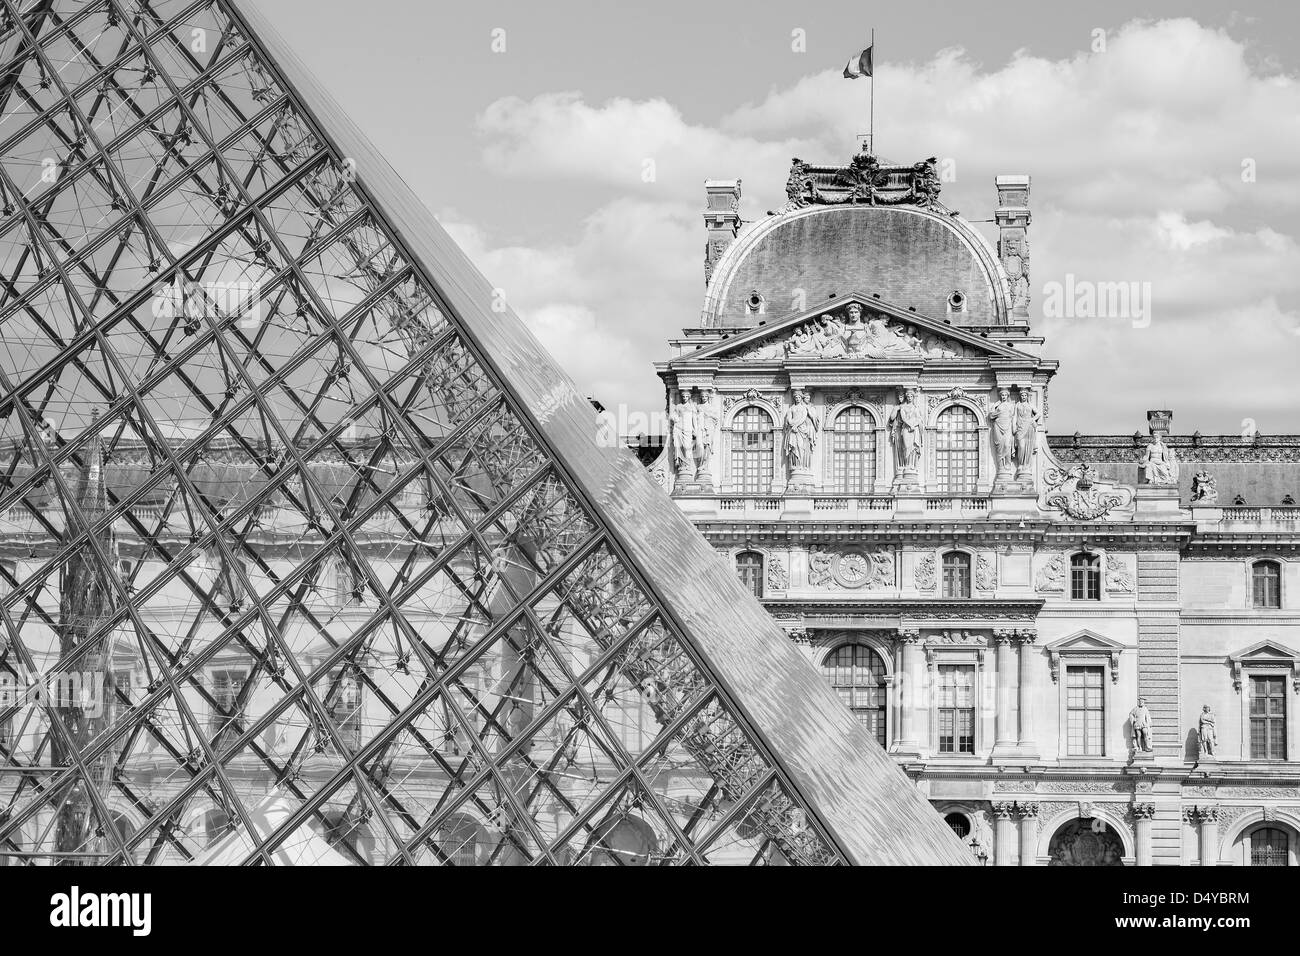 La Louvre à Paris tourné en noir et blanc avec la pyramide de verre qui les bullding traditionnels Banque D'Images